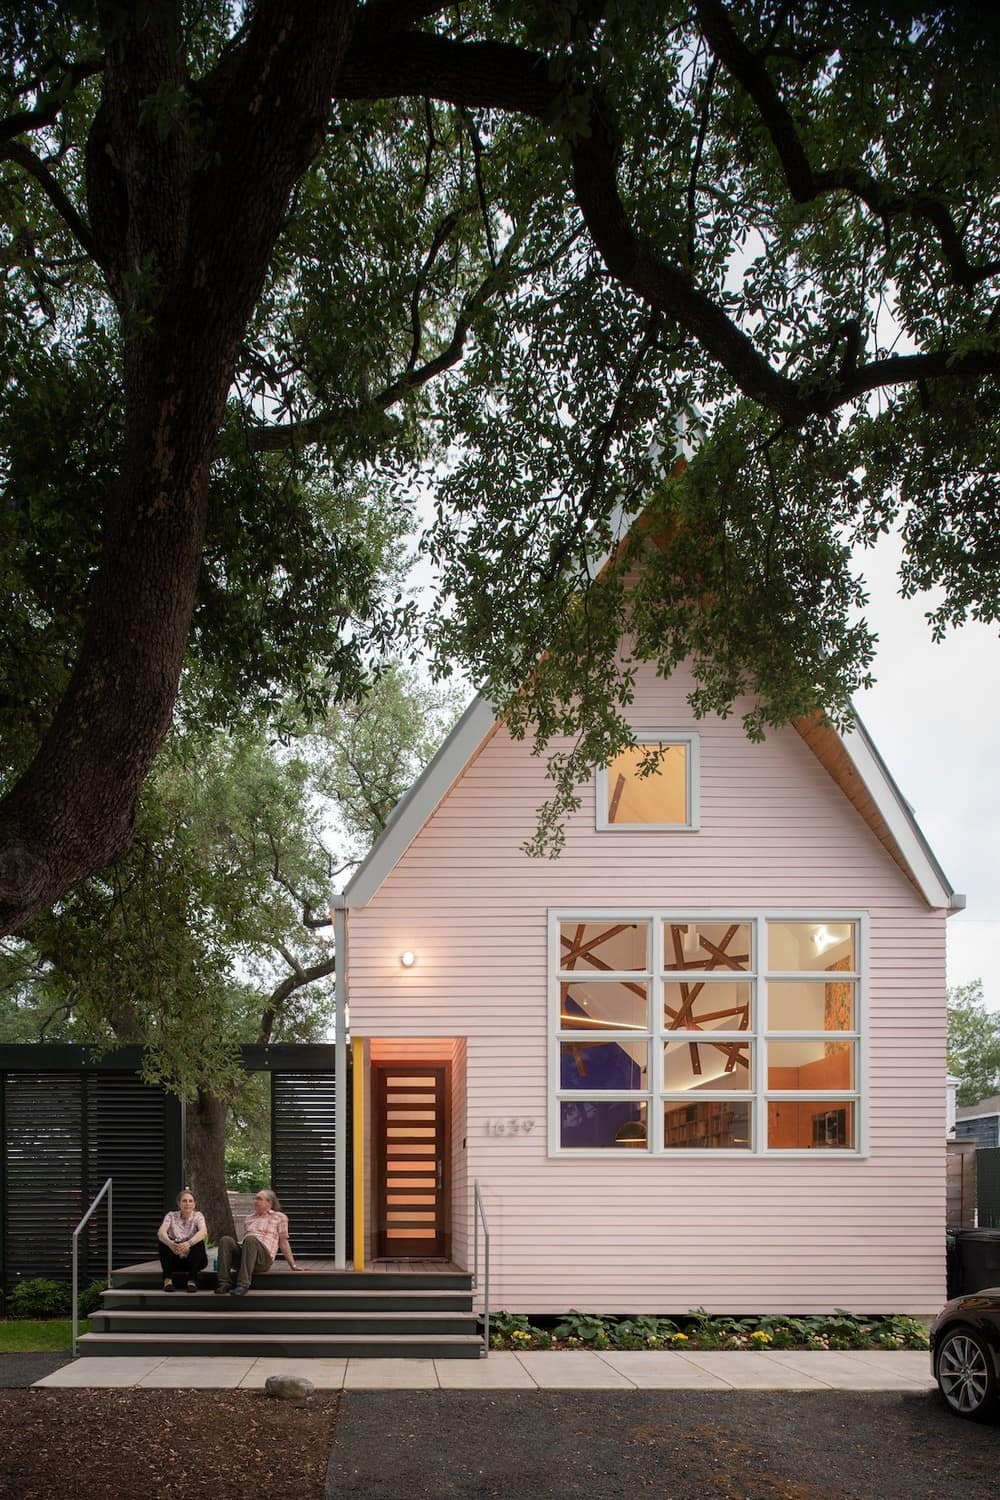 The Pink House / Brett Zamore Design